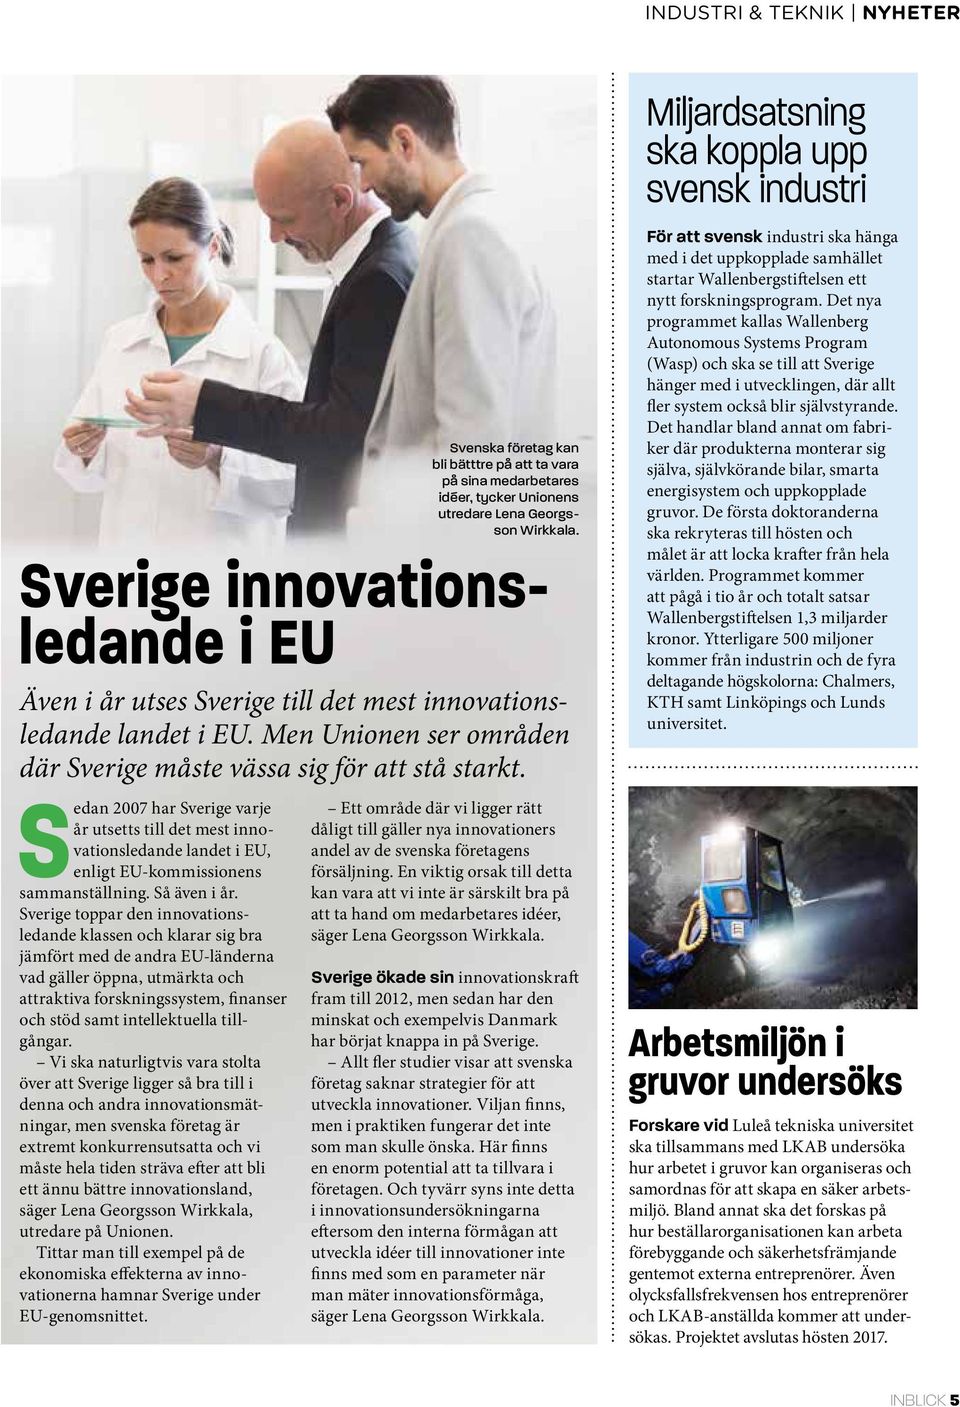 Sedan 2007 har Sverige varje år utsetts till det mest innovationsledande landet i EU, enligt EU-kommissionens sammanställning. Så även i år.